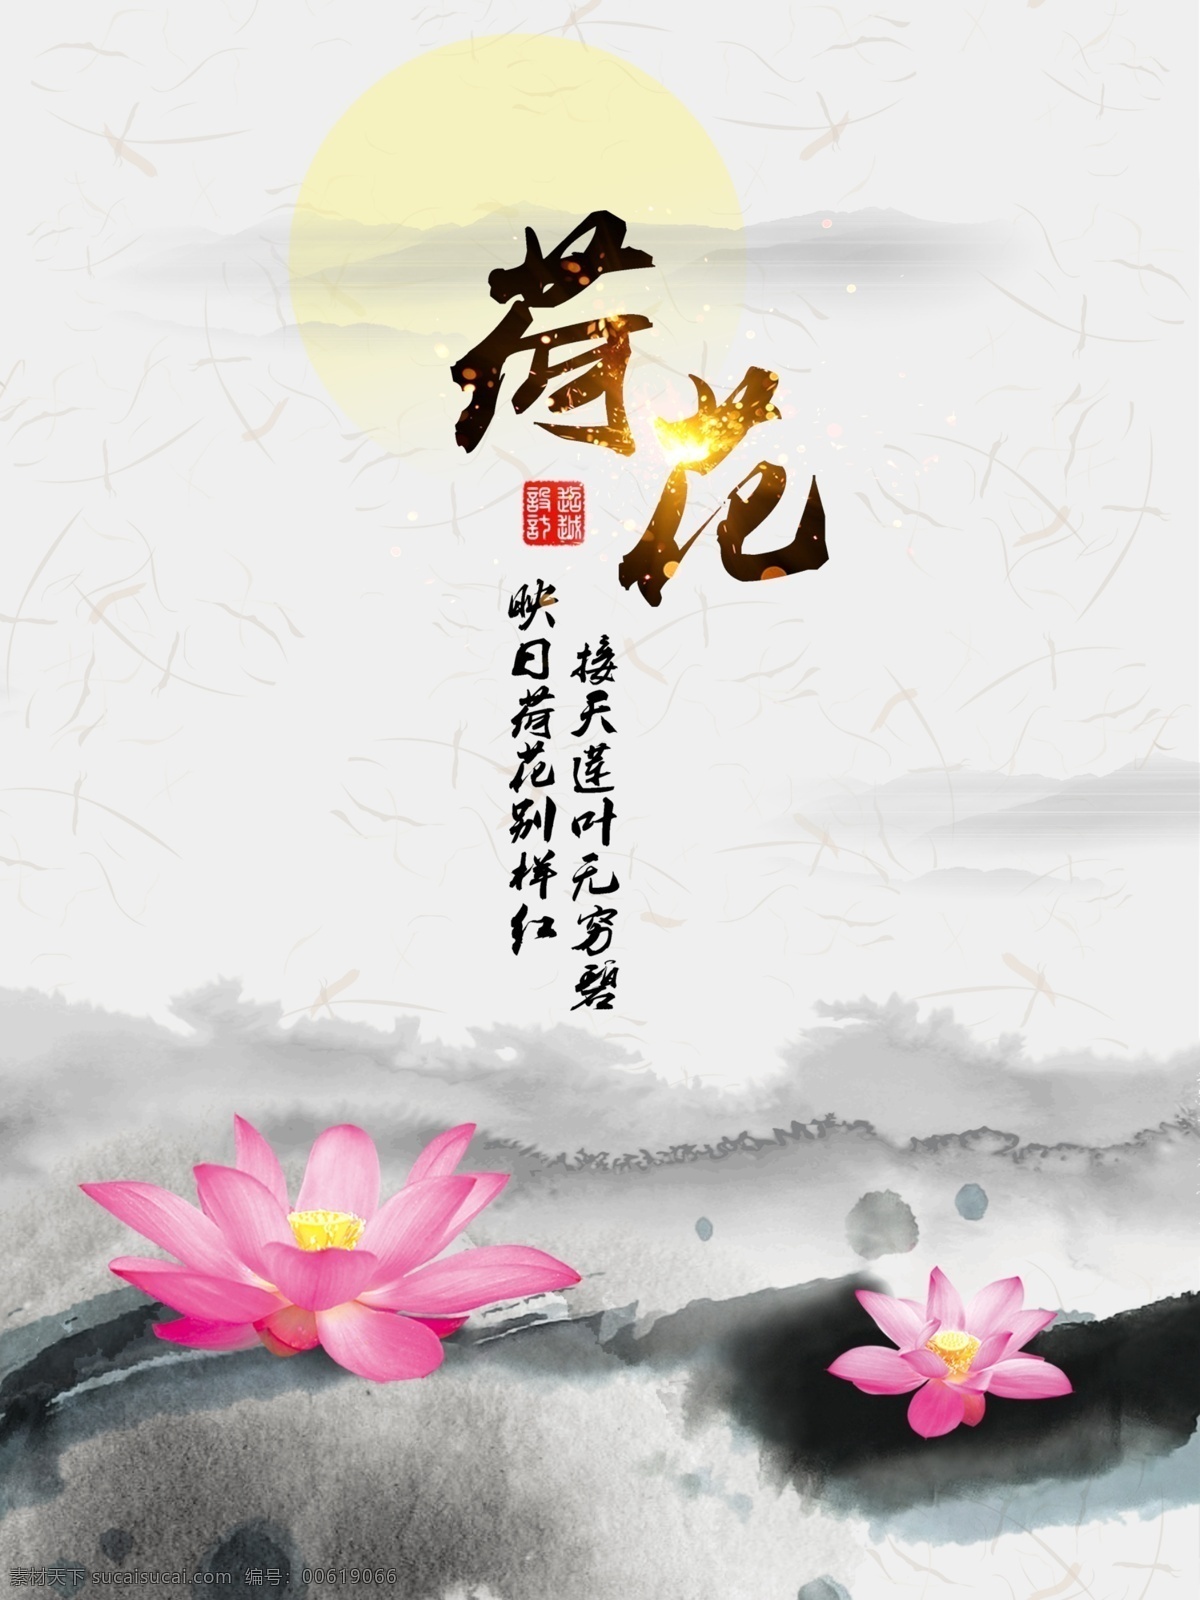 荷花 中 国风 传统 海报 水墨 映日 无穷 山水